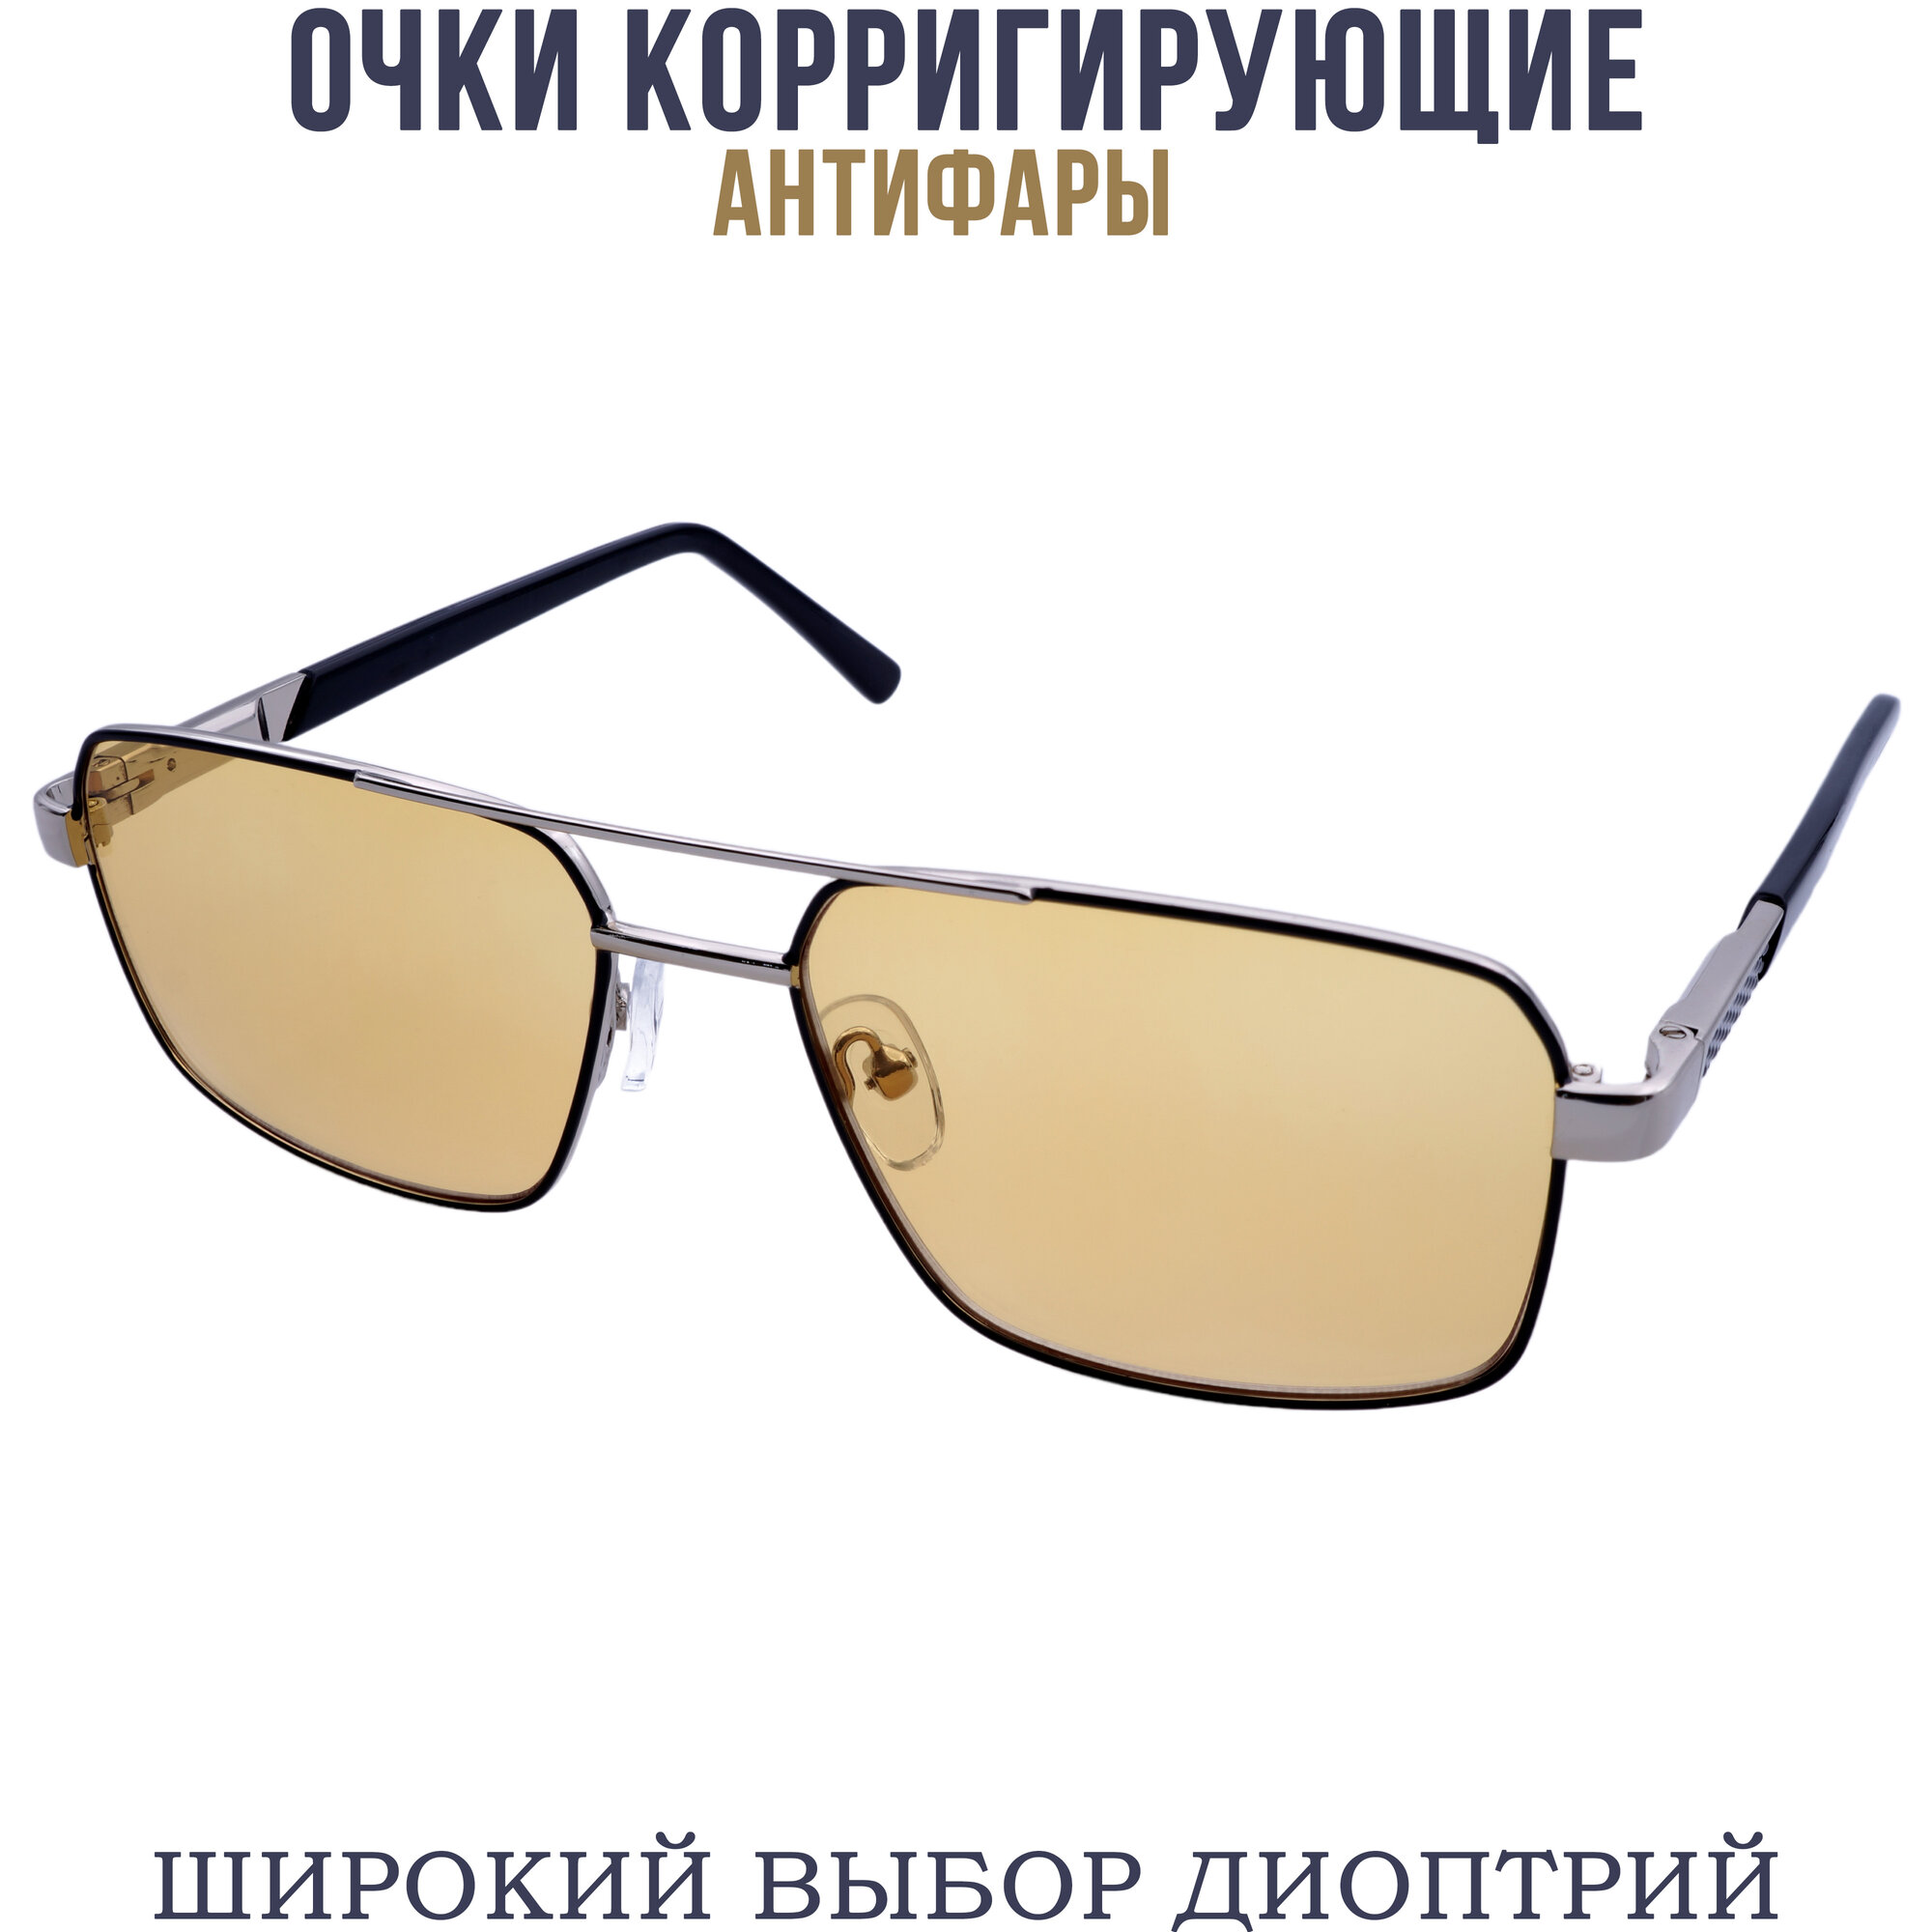 Готовые очки для зрения антифара с диоптриями pd62-64 бронзово-черный +1.25